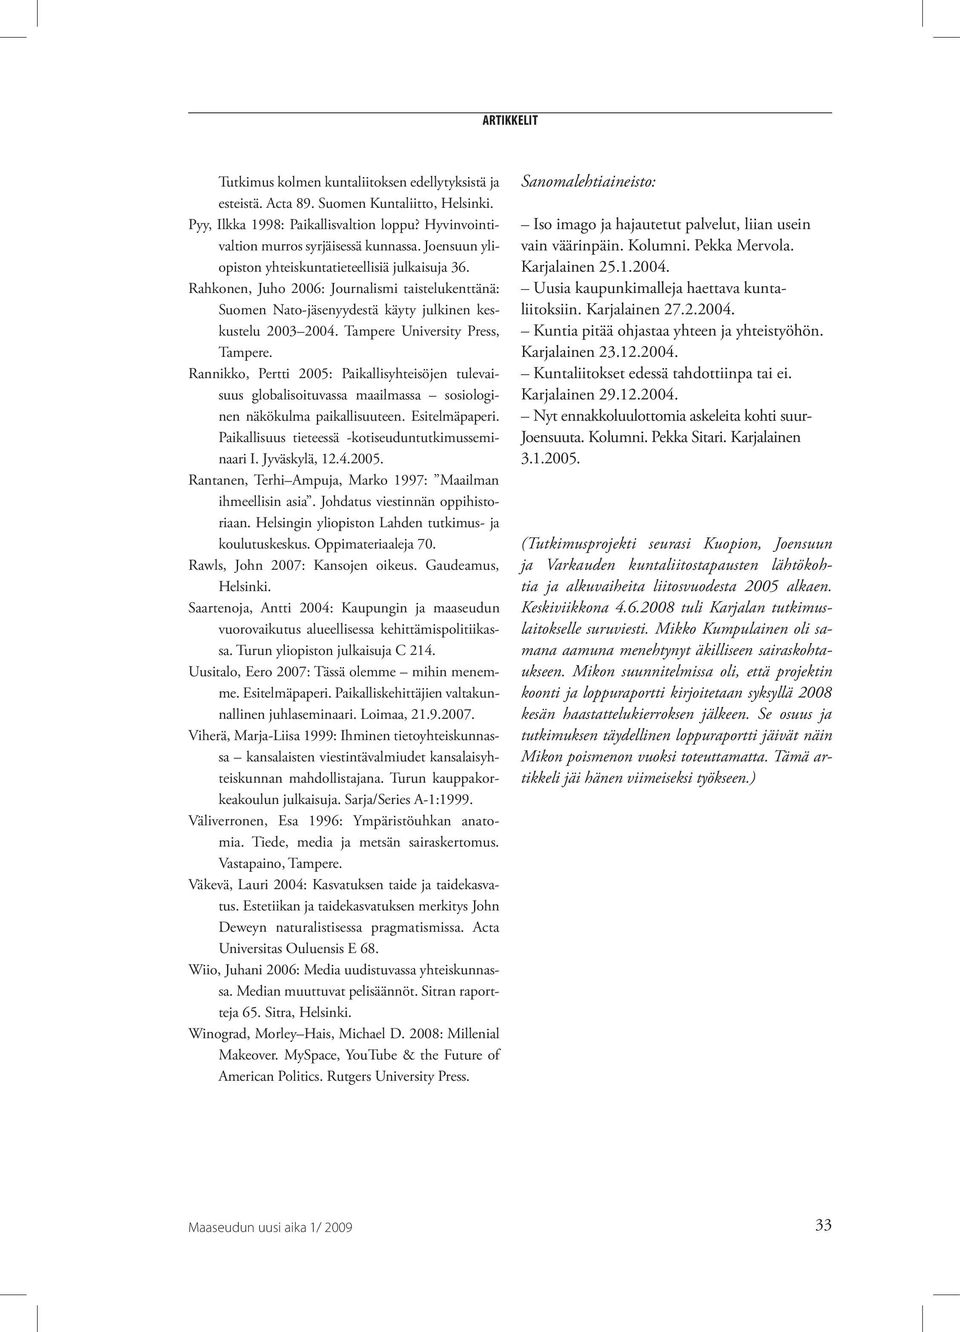 Tampere University Press, Tampere. Rannikko, Pertti 2005: Paikallisyhteisöjen tulevaisuus globalisoituvassa maailmassa sosiologinen näkökulma paikallisuuteen. Esitelmäpaperi.